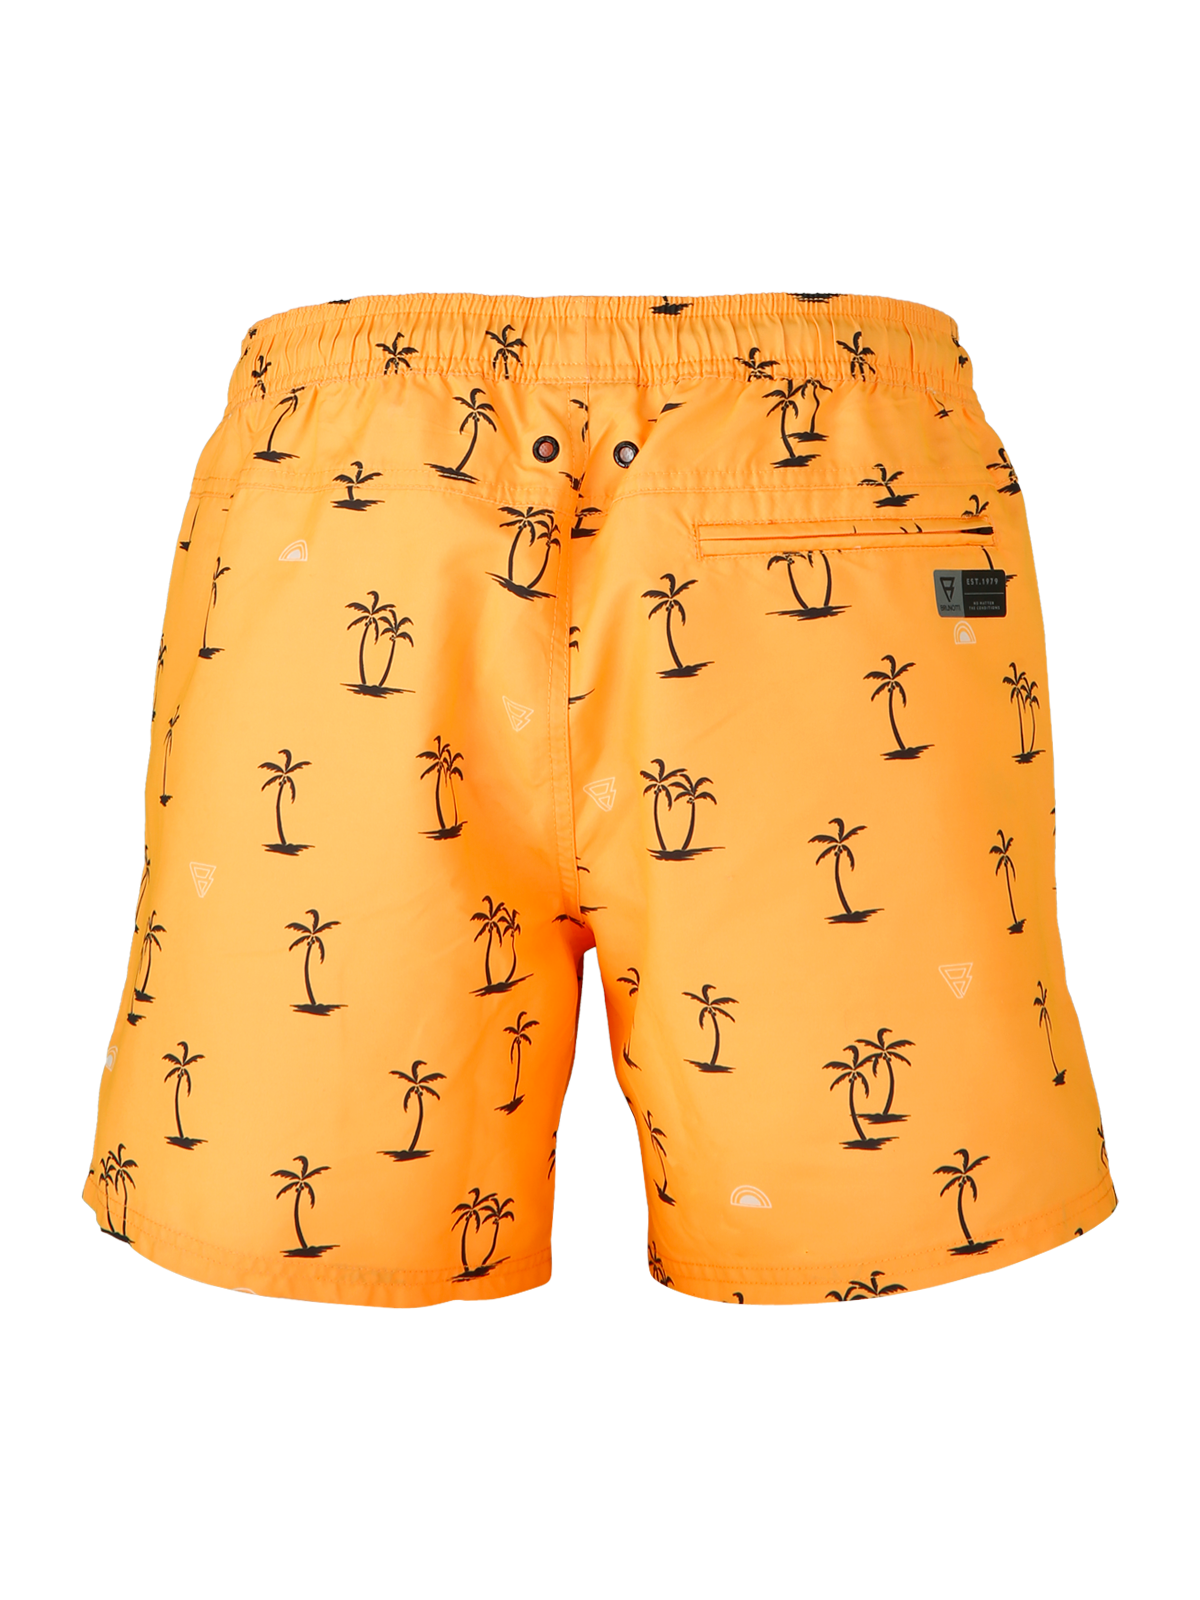 CrunECO-Mini-N Men Swim Shorts | Yellow-Orange